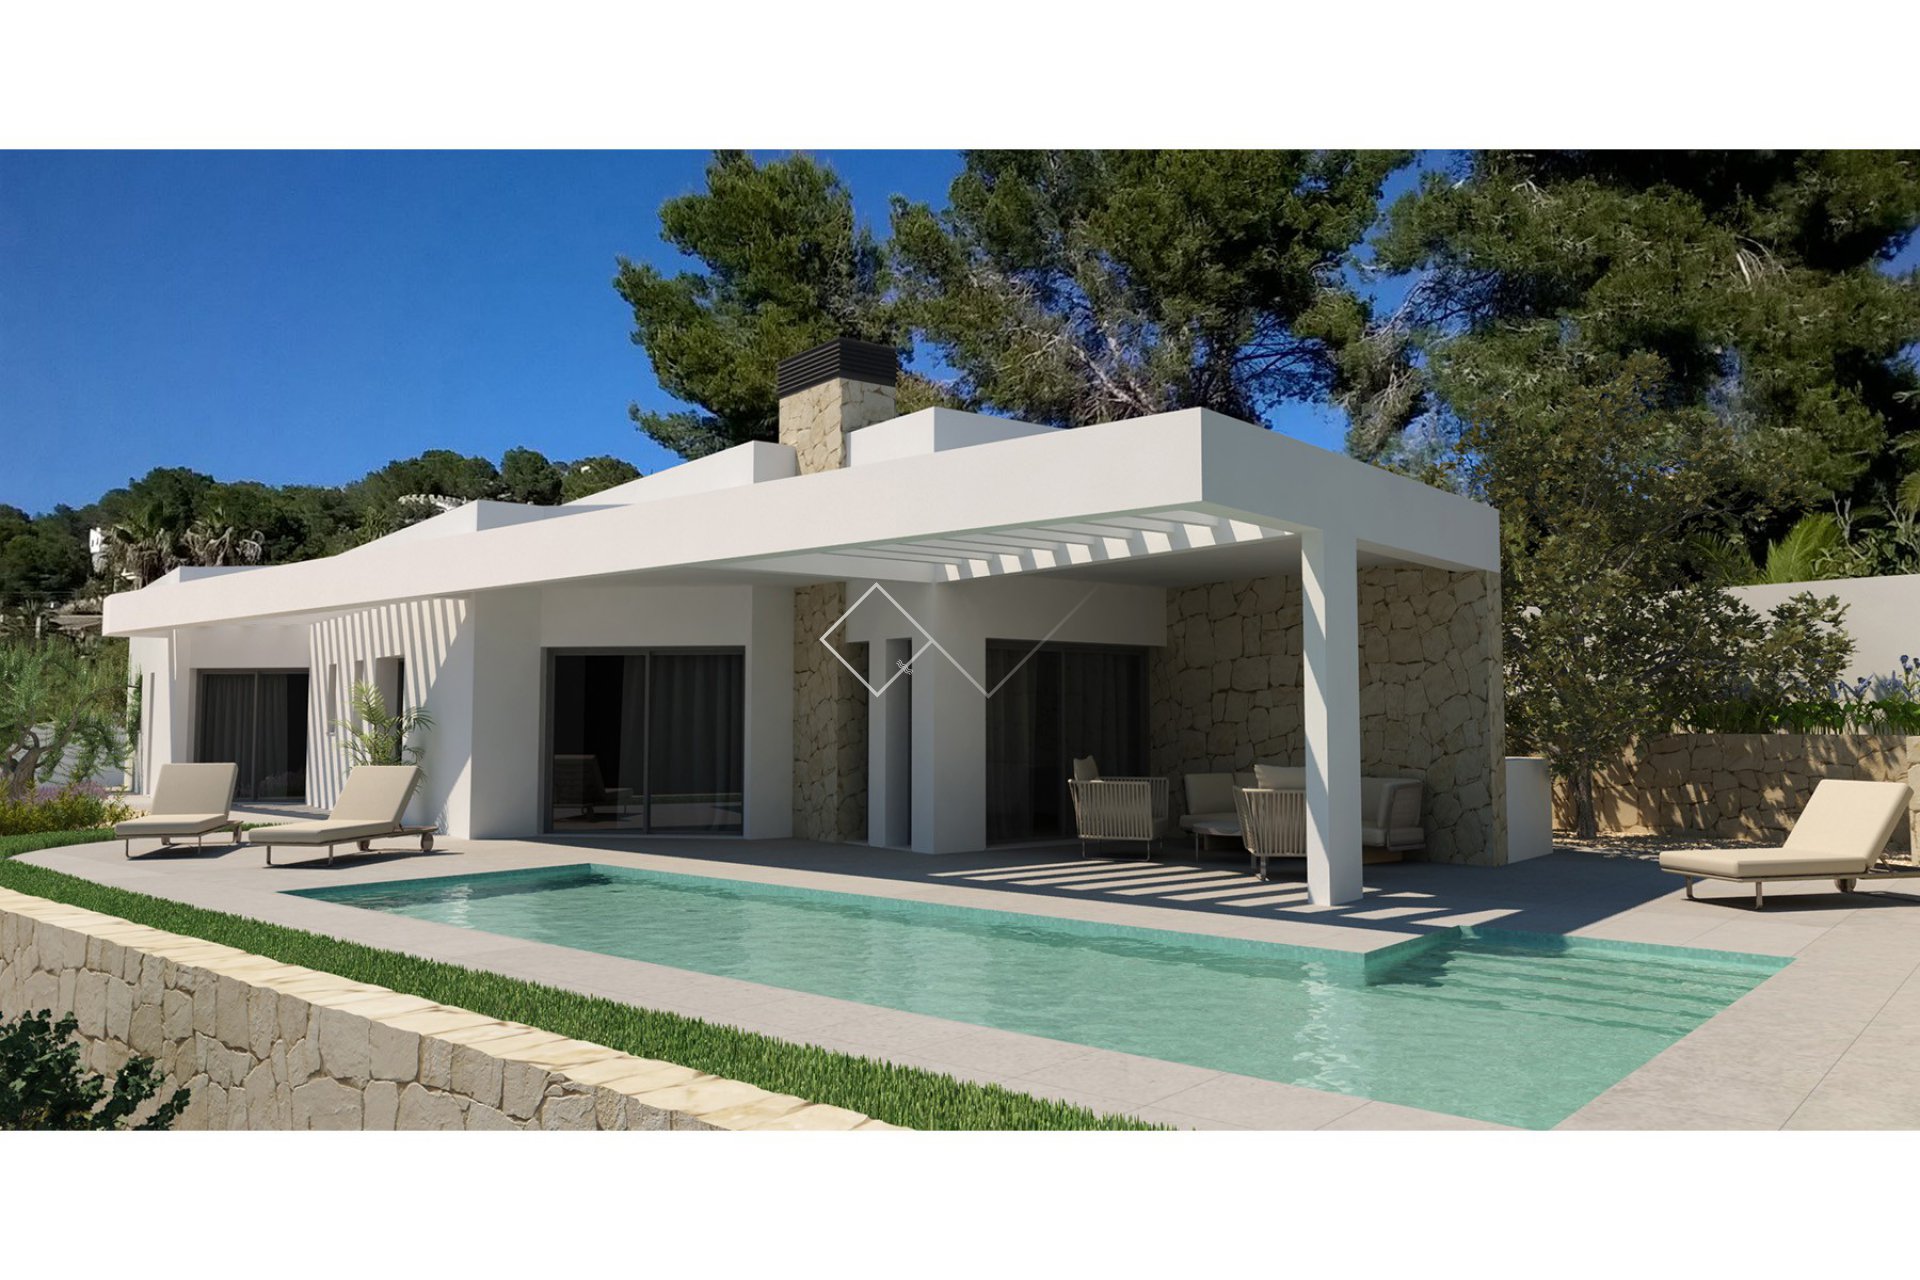 Moderne Villa zu verkaufen in der Nahe von Moraira